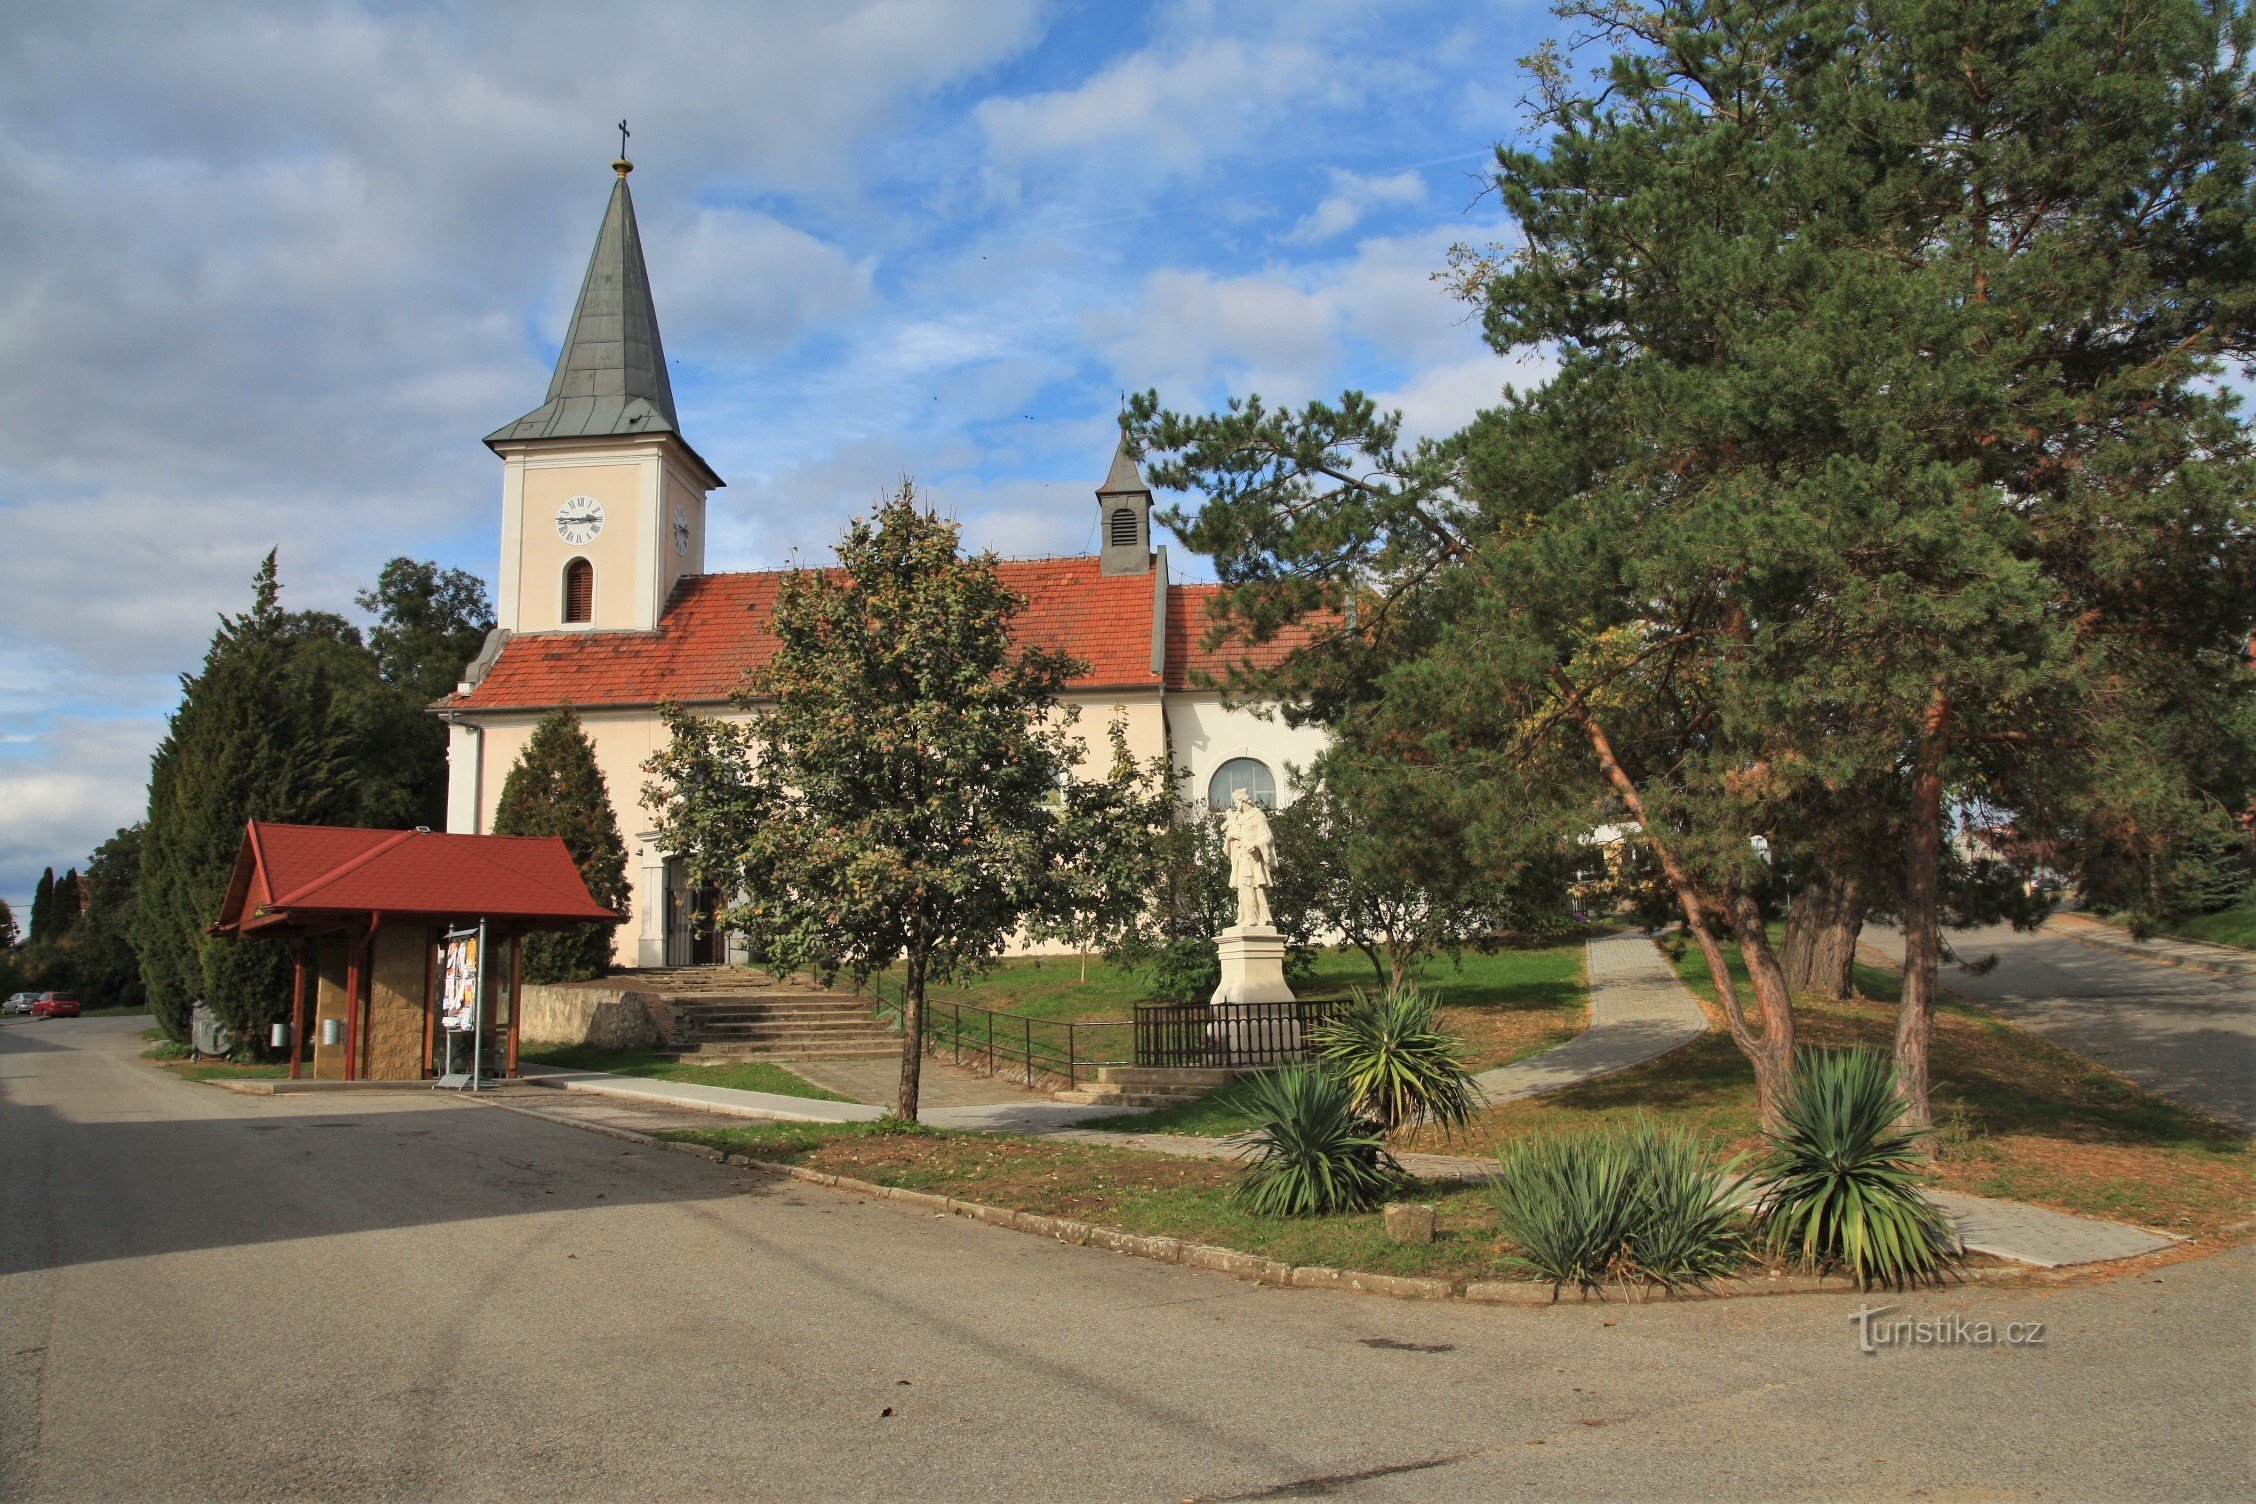 Het dorp Pribic wordt gedomineerd door de kerk van St. Johannes de Doper